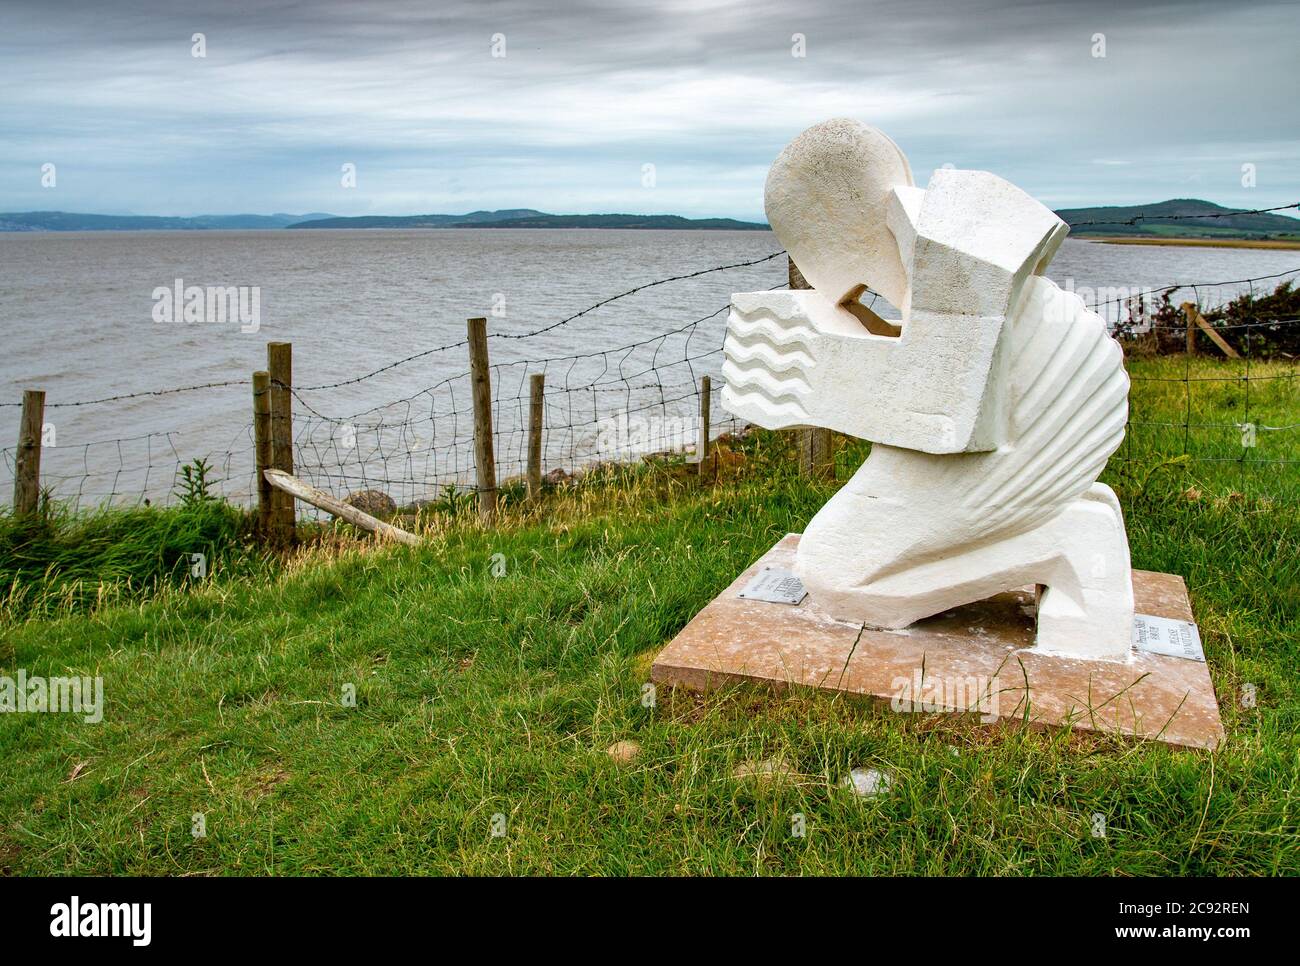 La scultura della conchiglia di preghiera, una scultura pubblica che si affaccia sulla baia di Morecambe, presso la Red Bank Farm, Bolton-le-Sands, Carnforth, Lancashire, UK. Foto Stock